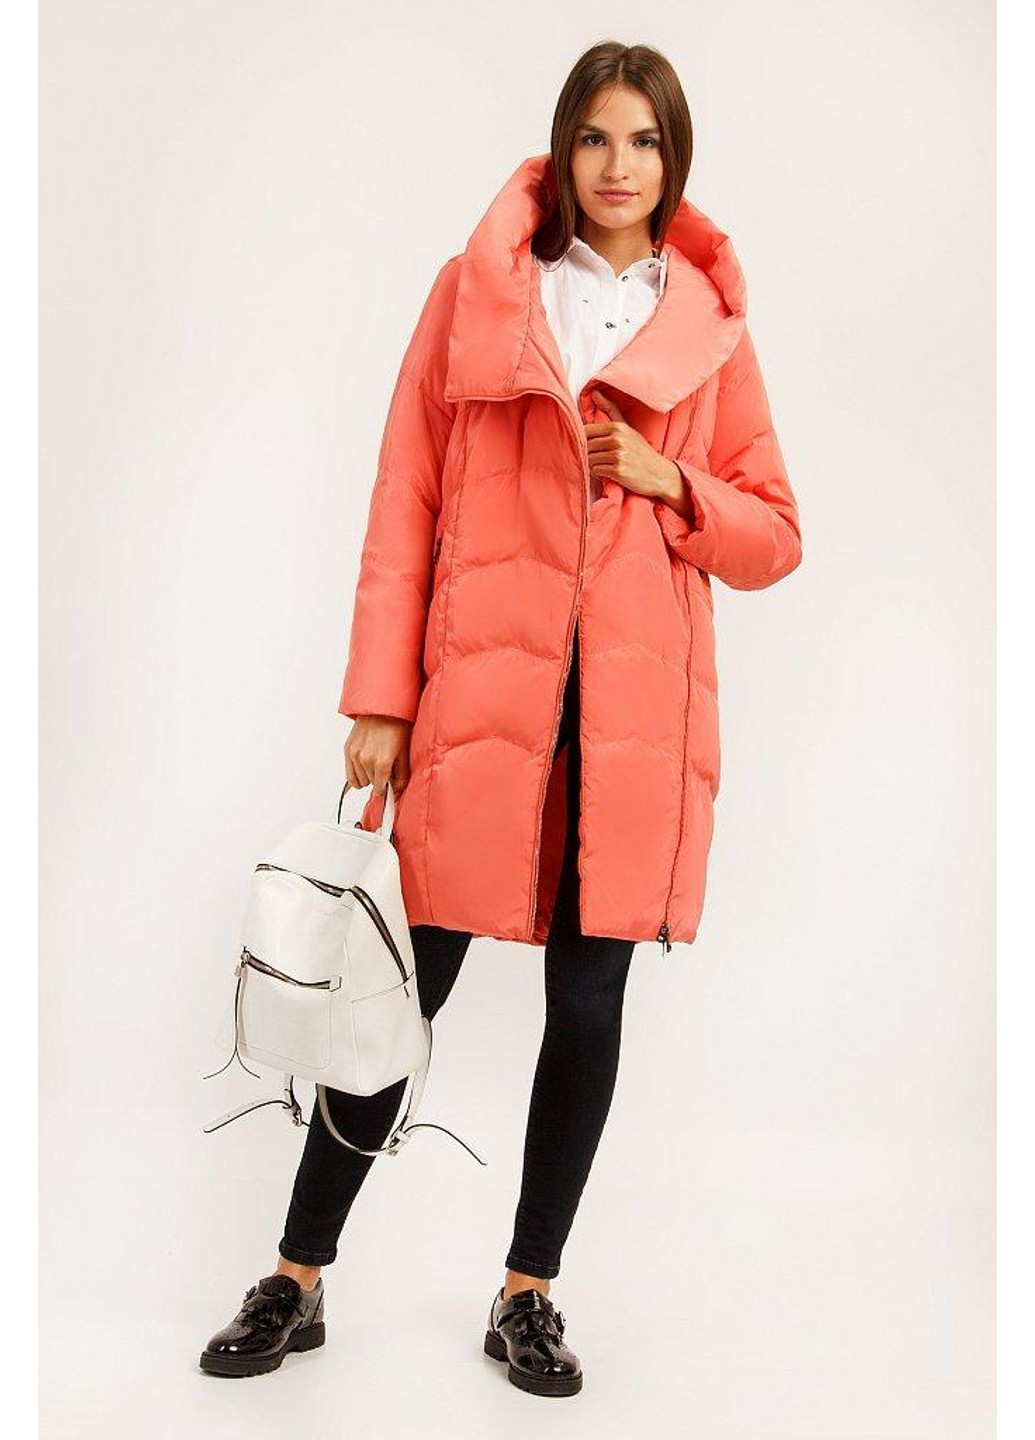 Розовая зимняя зимняя куртка a19-11010-310 Finn Flare